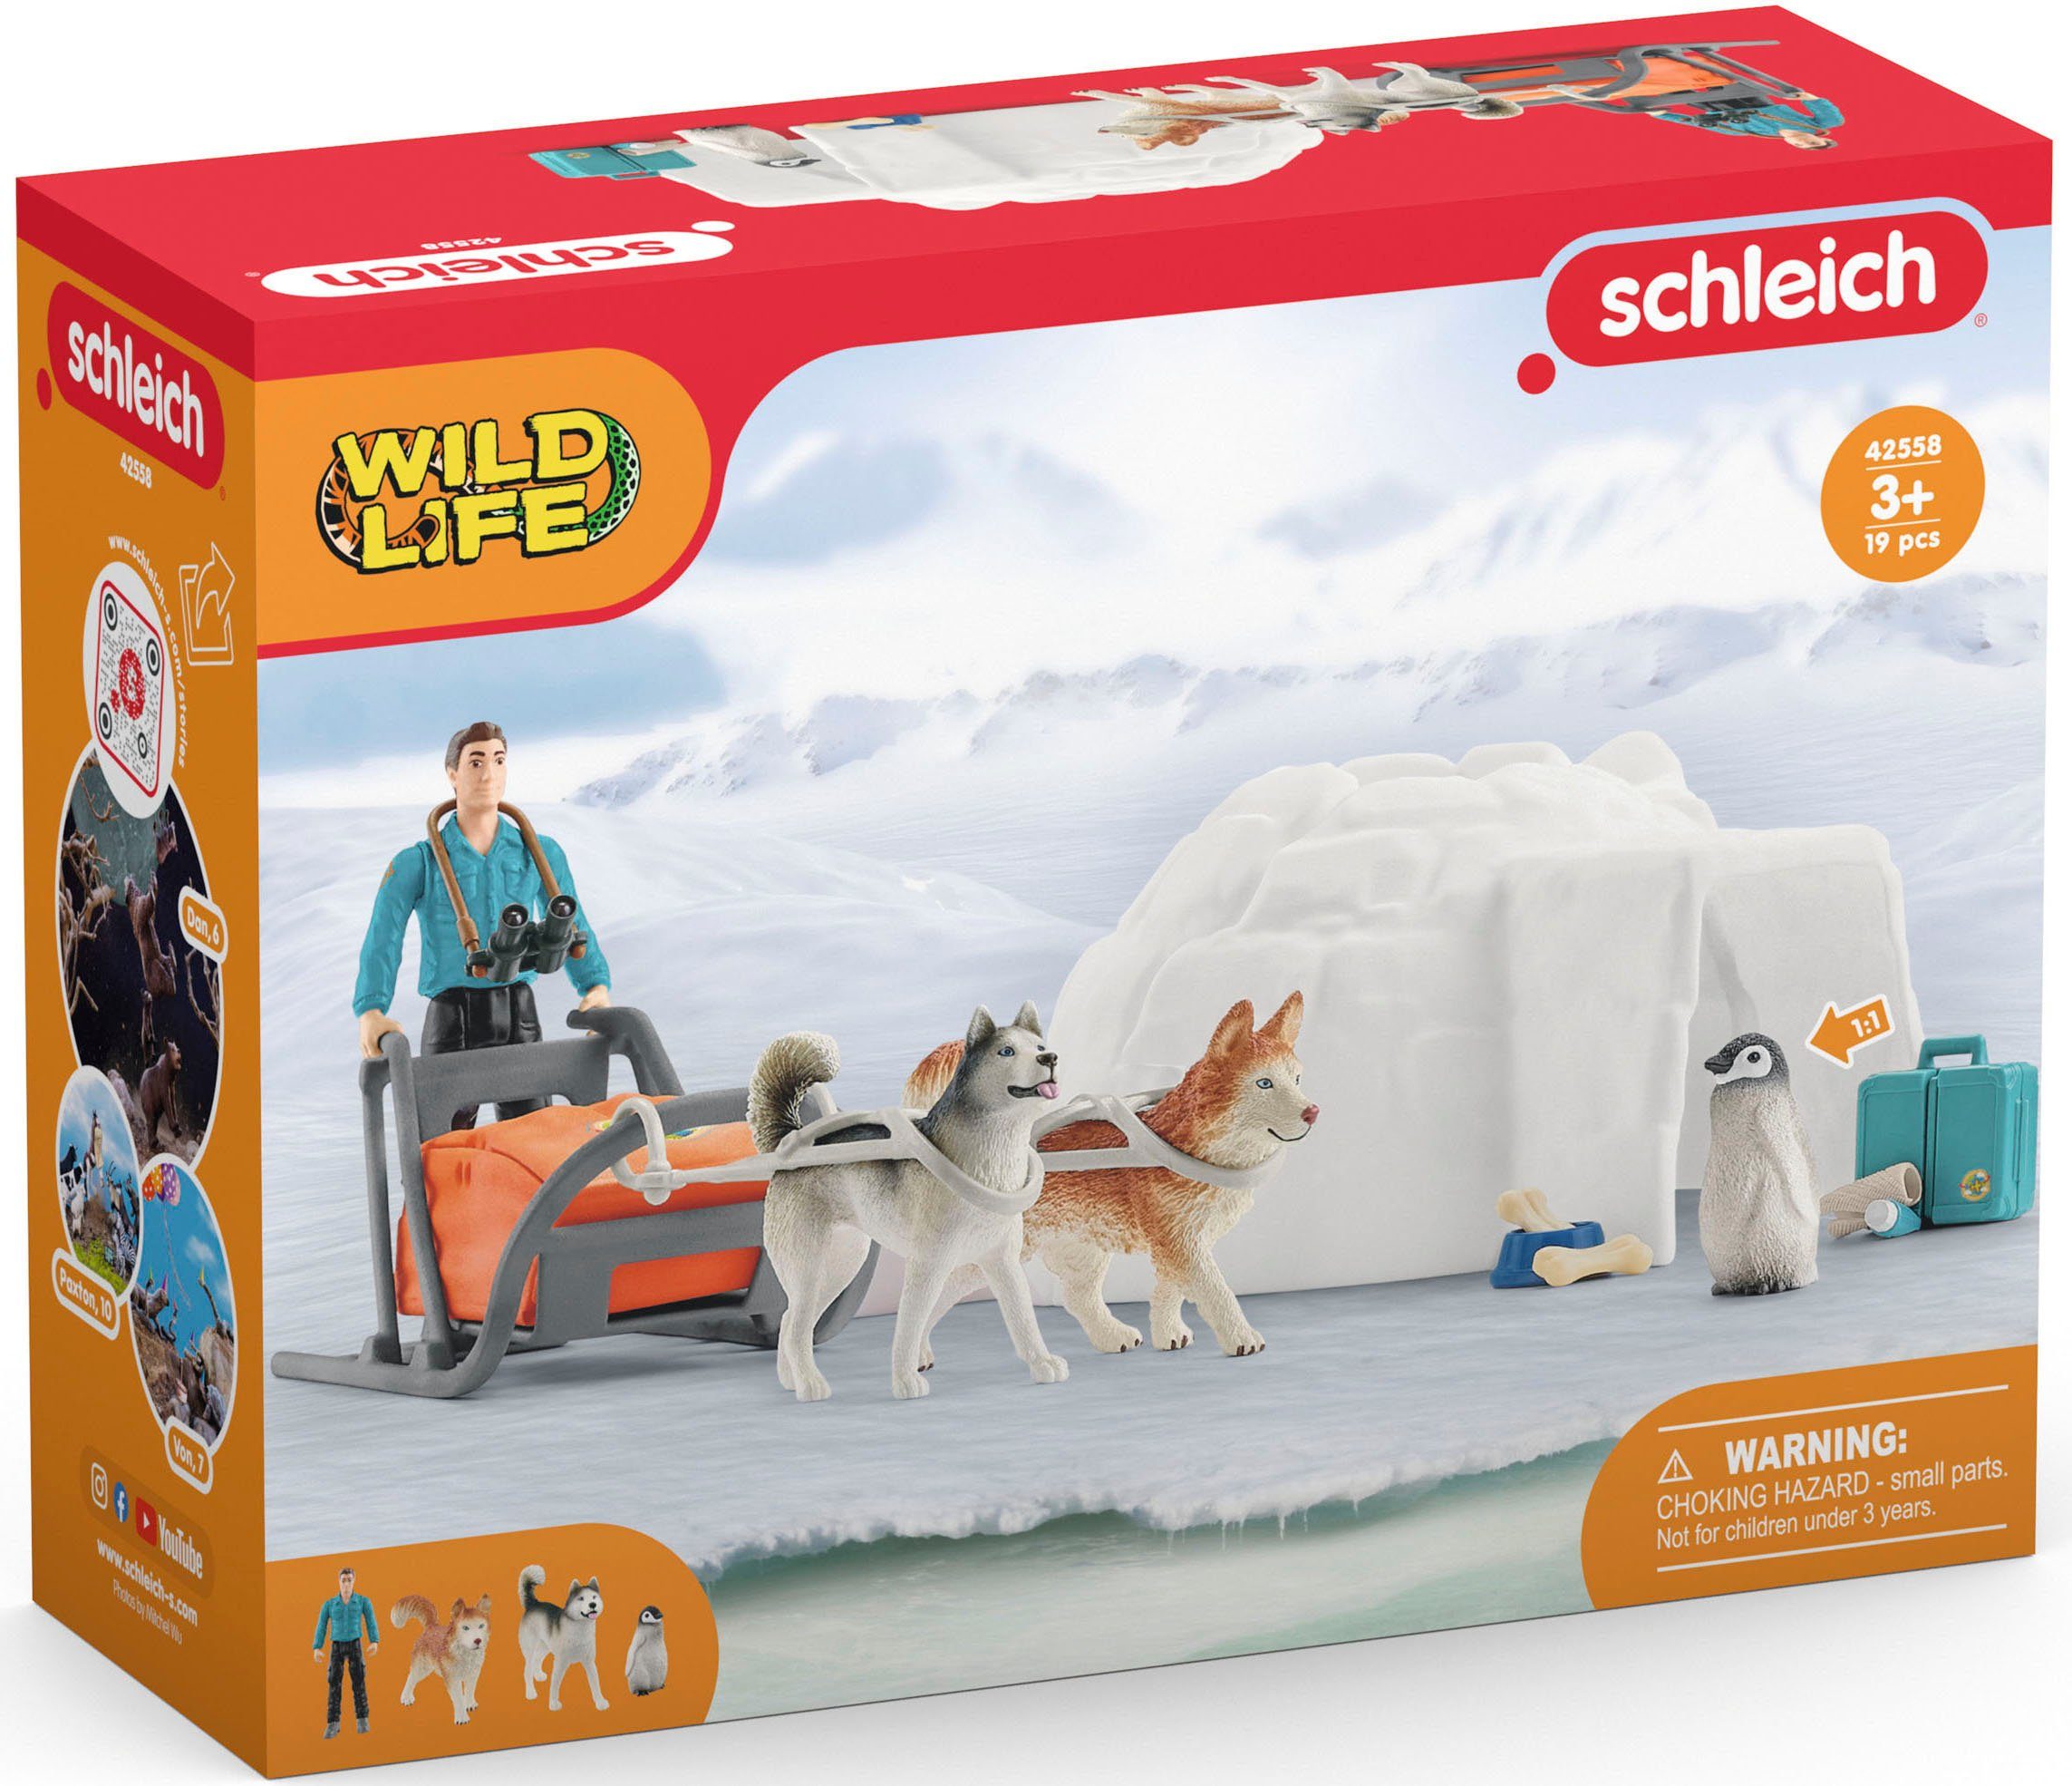 Spielwelt Antarktis in Europe Expedition Schleich® Made WILD (42558), LIFE,